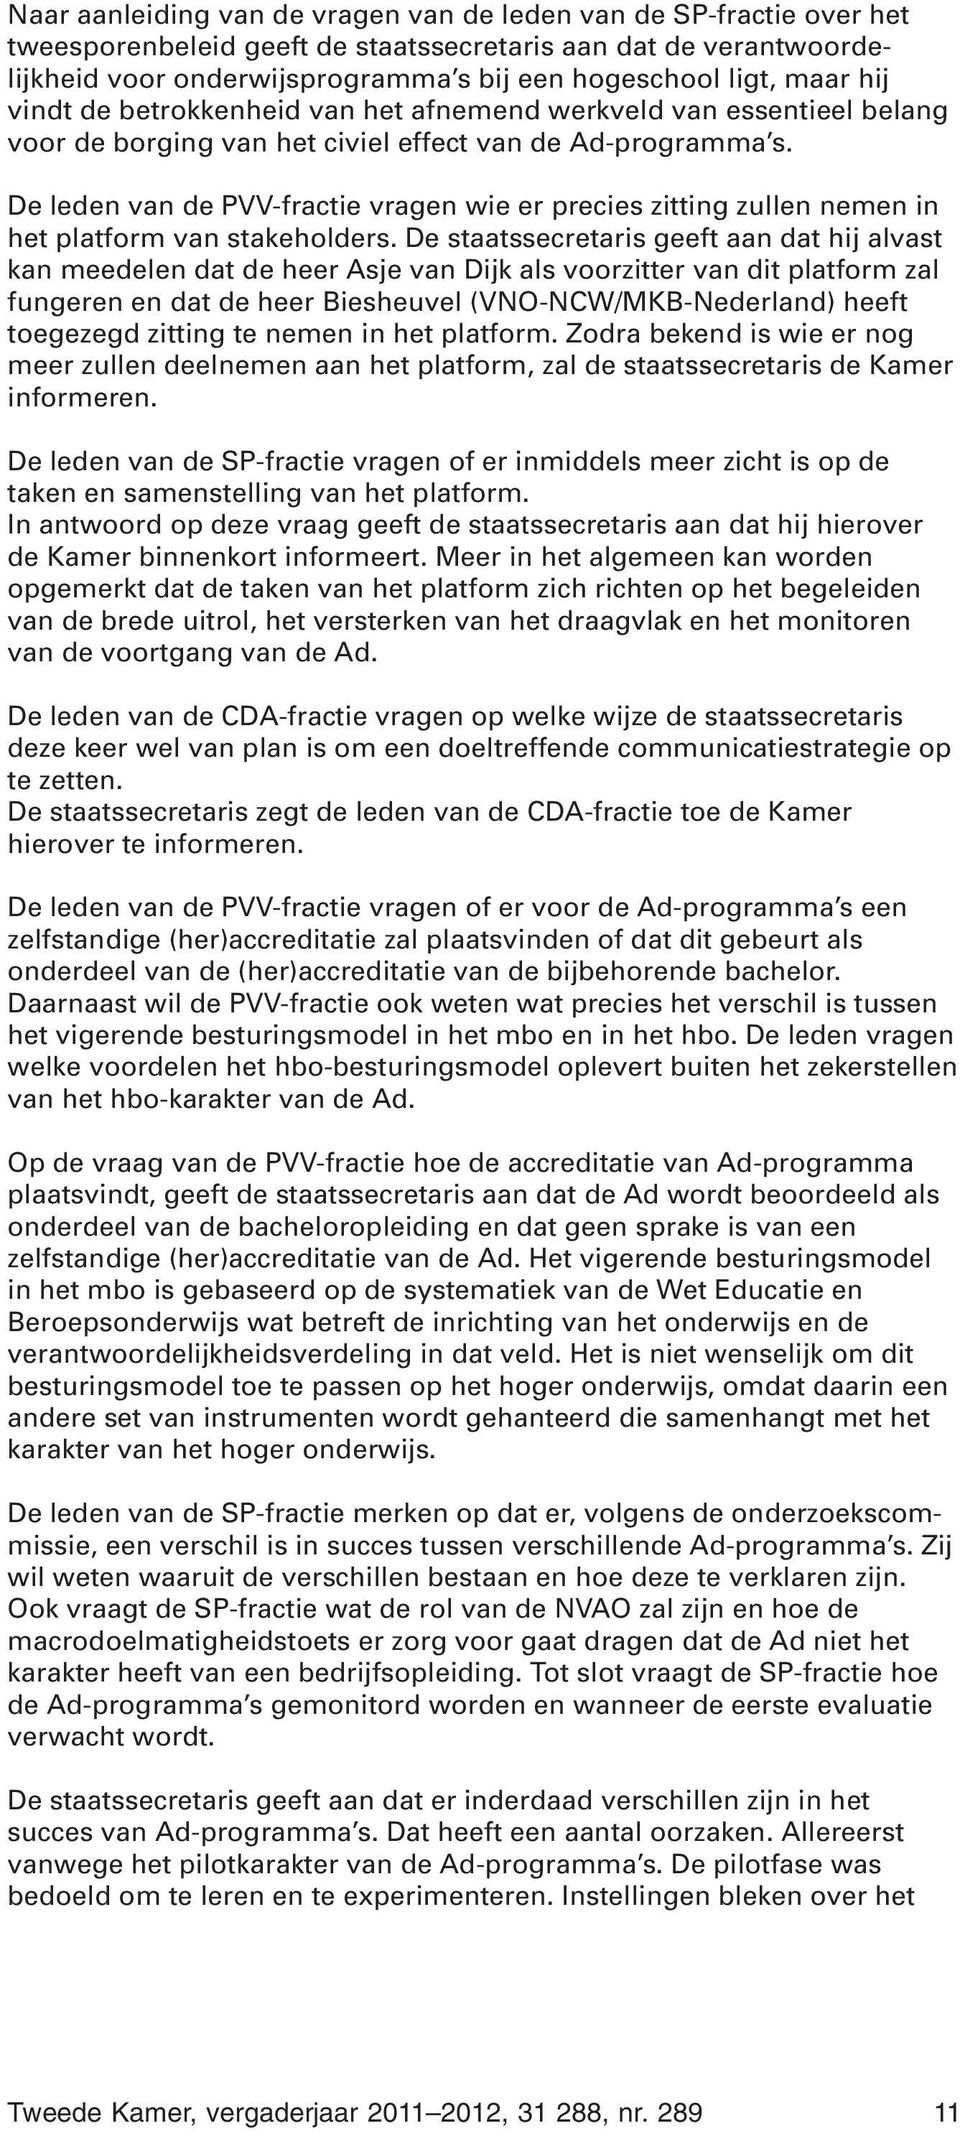 De leden van de PVV-fractie vragen wie er precies zitting zullen nemen in het platform van stakeholders.